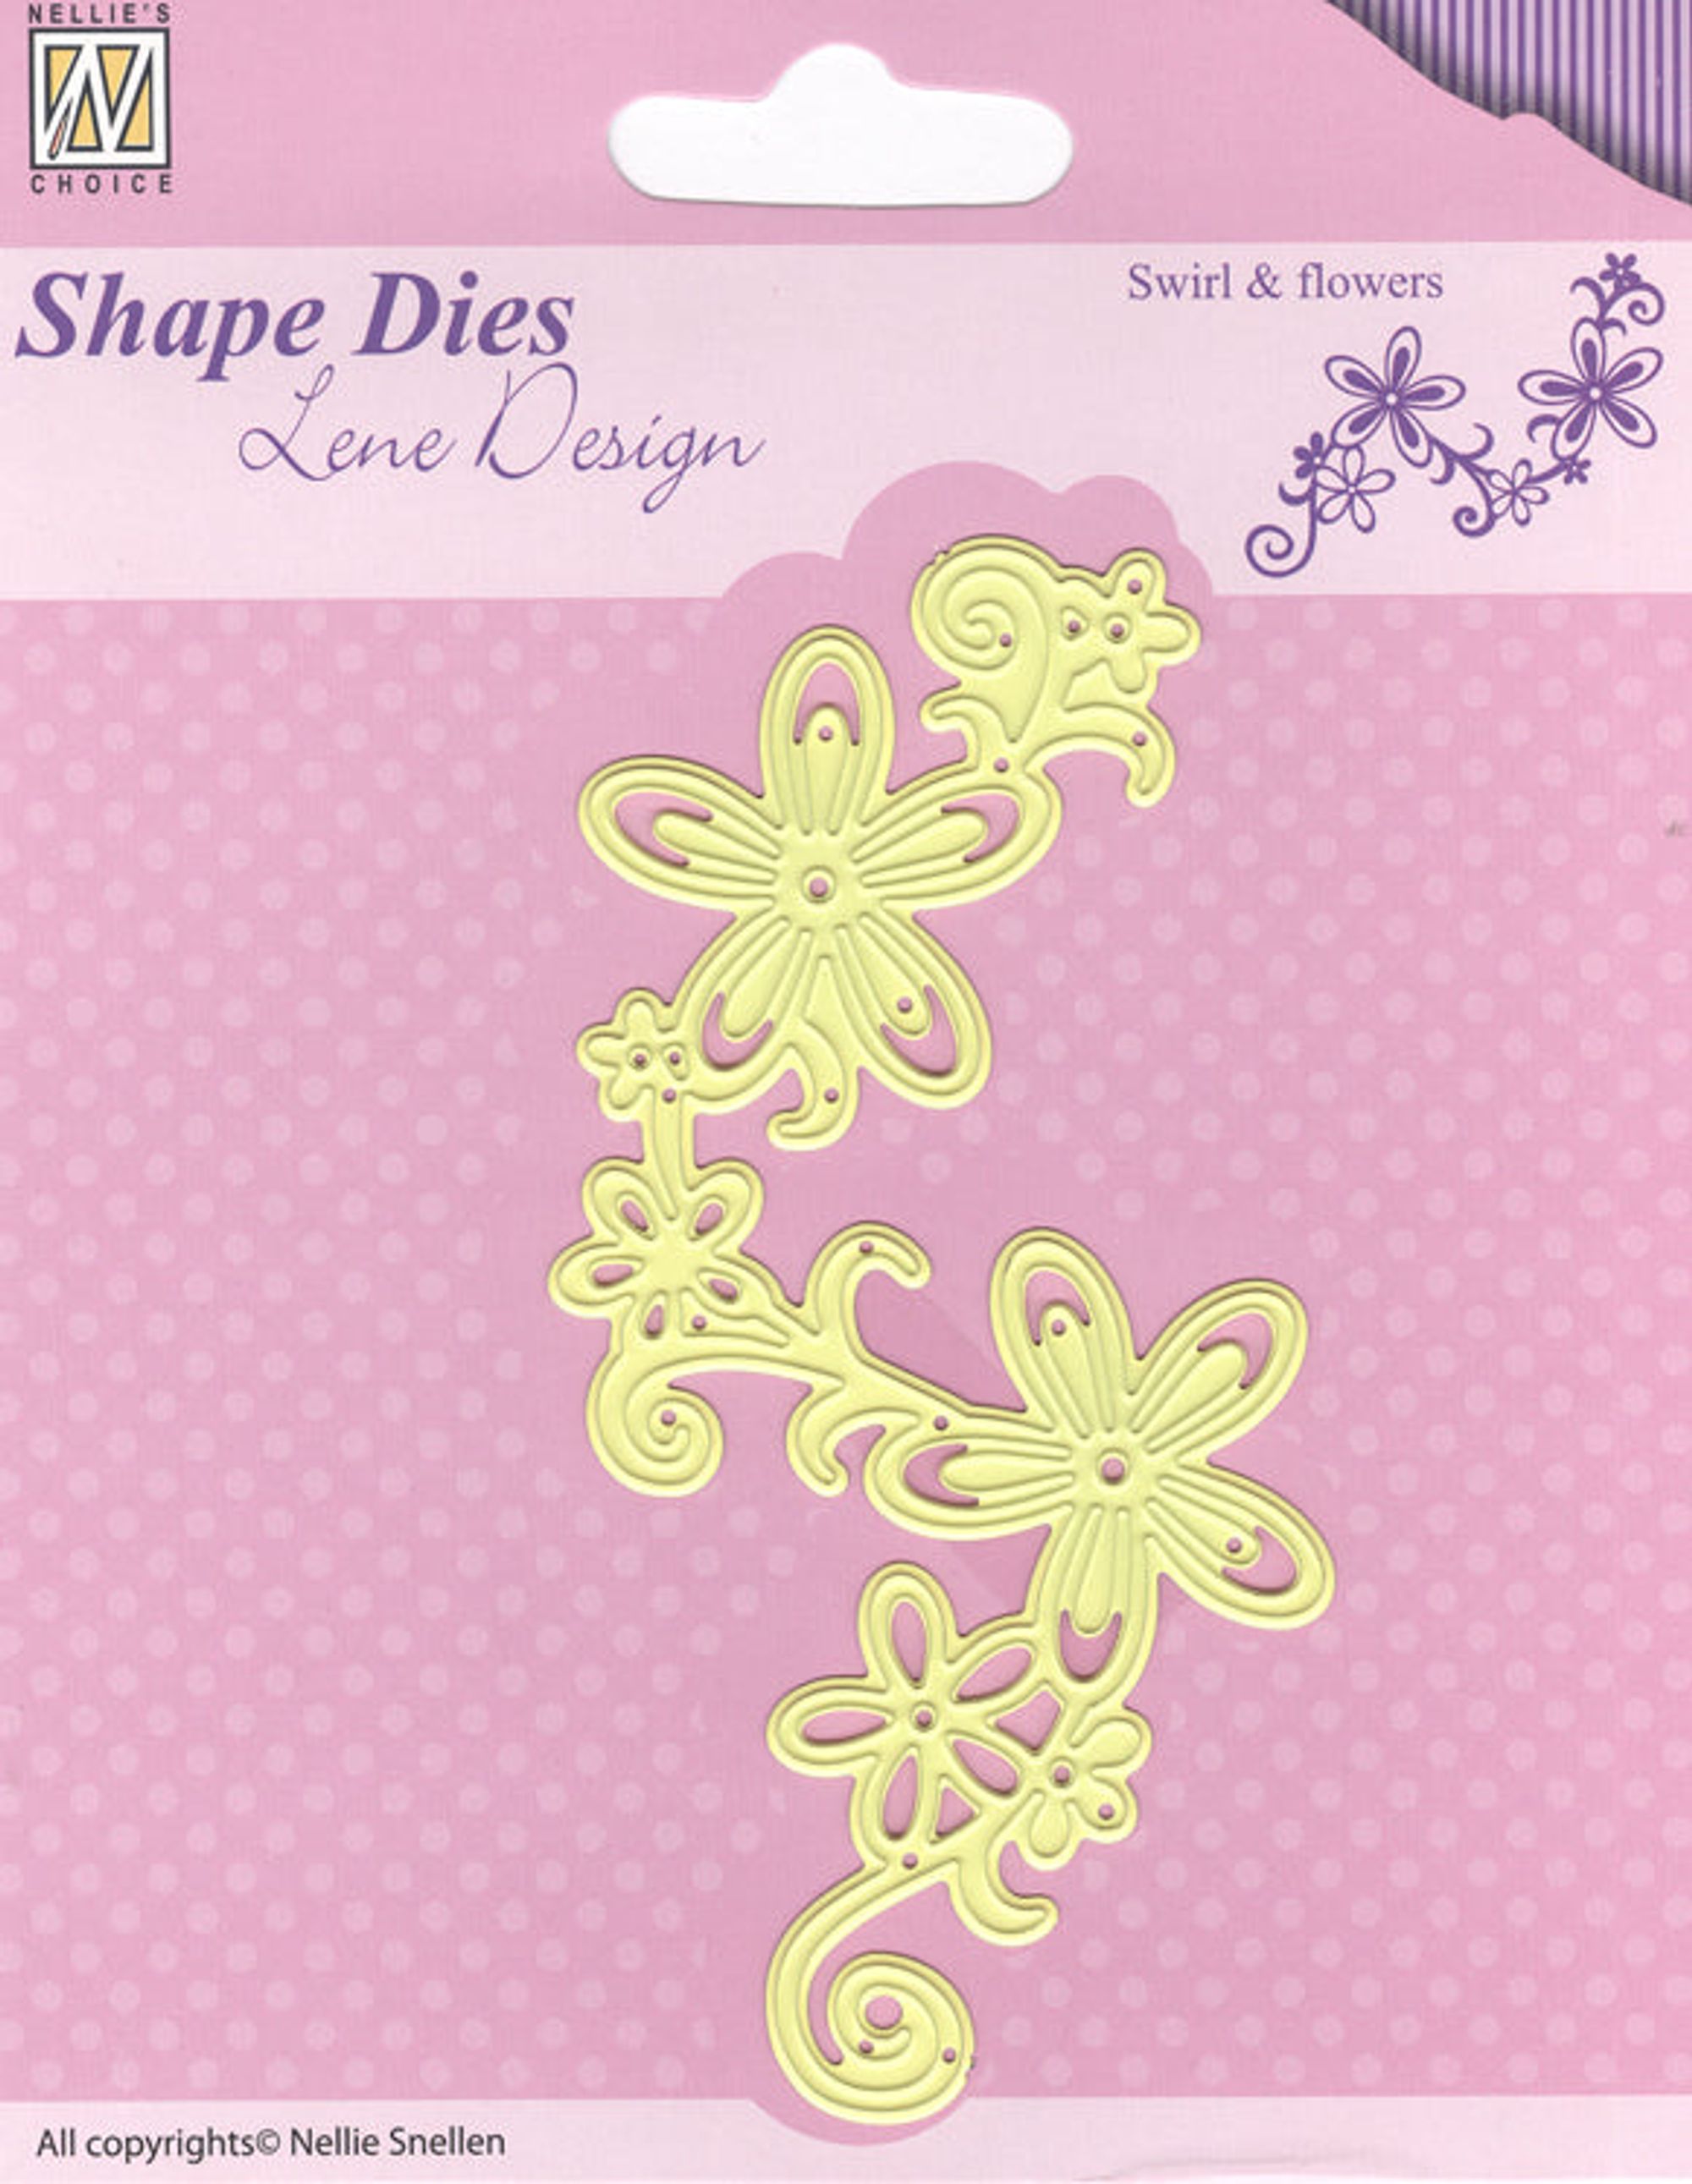 Shape Die - Swirl & Flowers